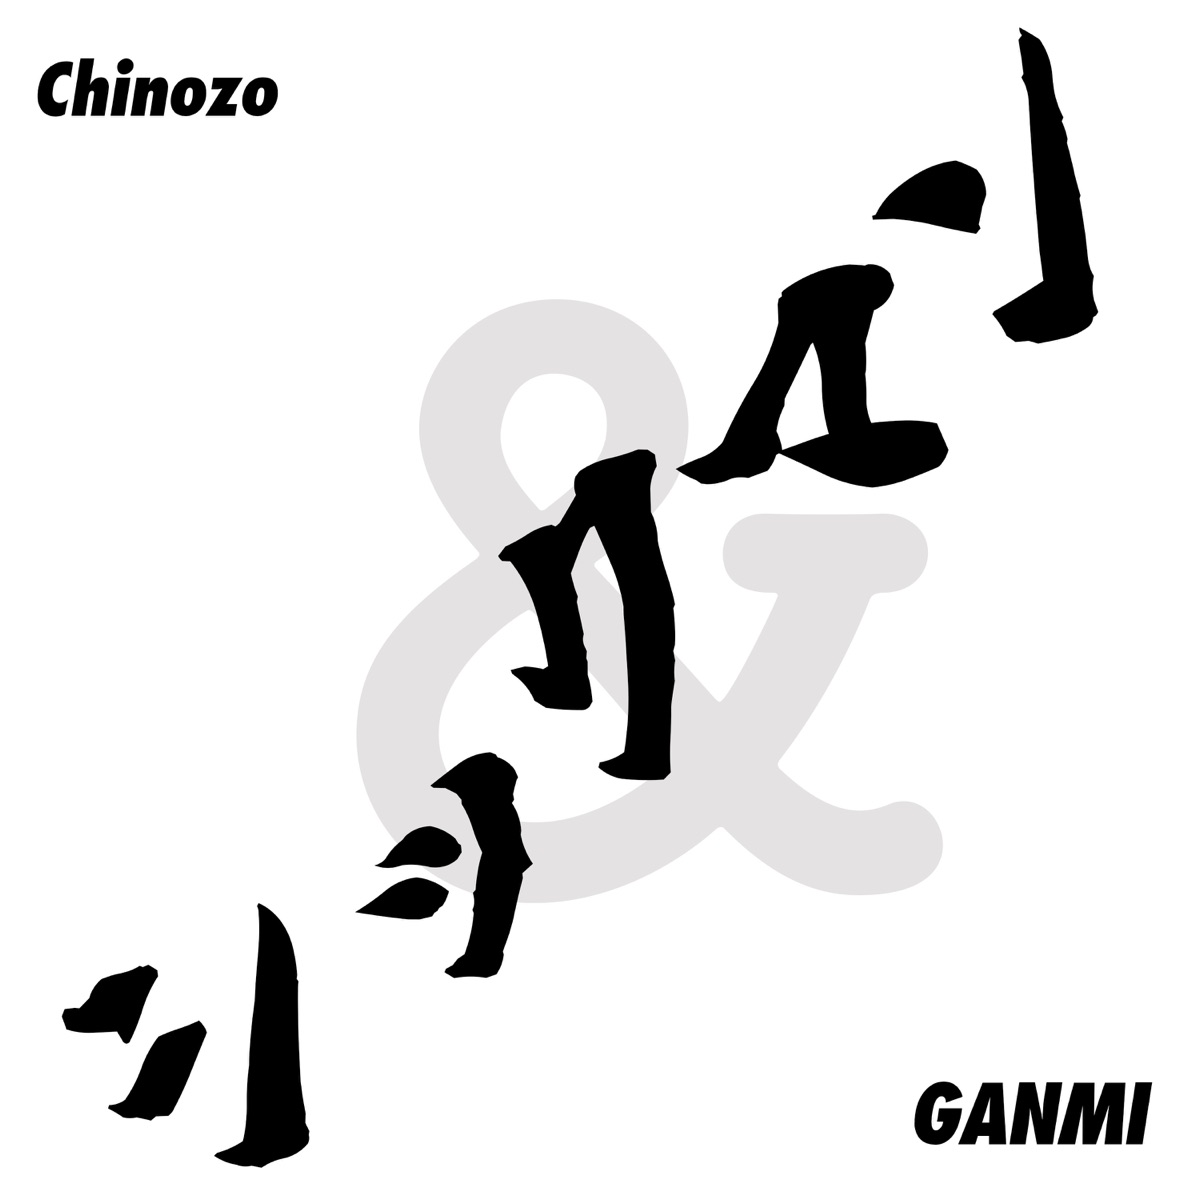 『Chinozo & GANMI - シックマン』収録の『シックマン』ジャケット